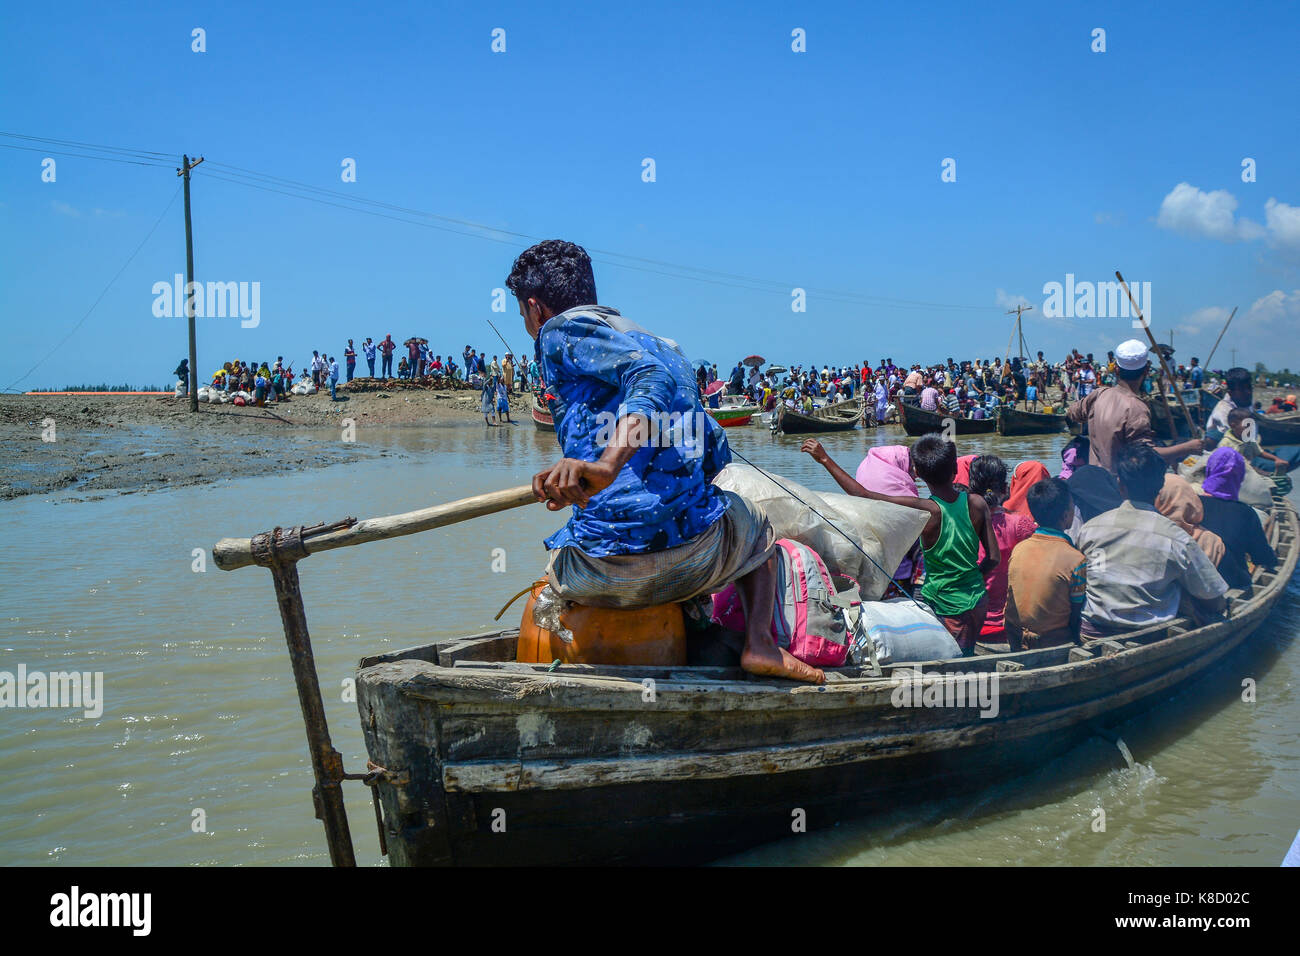 Rohingya refugees in Bangladesh . Stock Photo